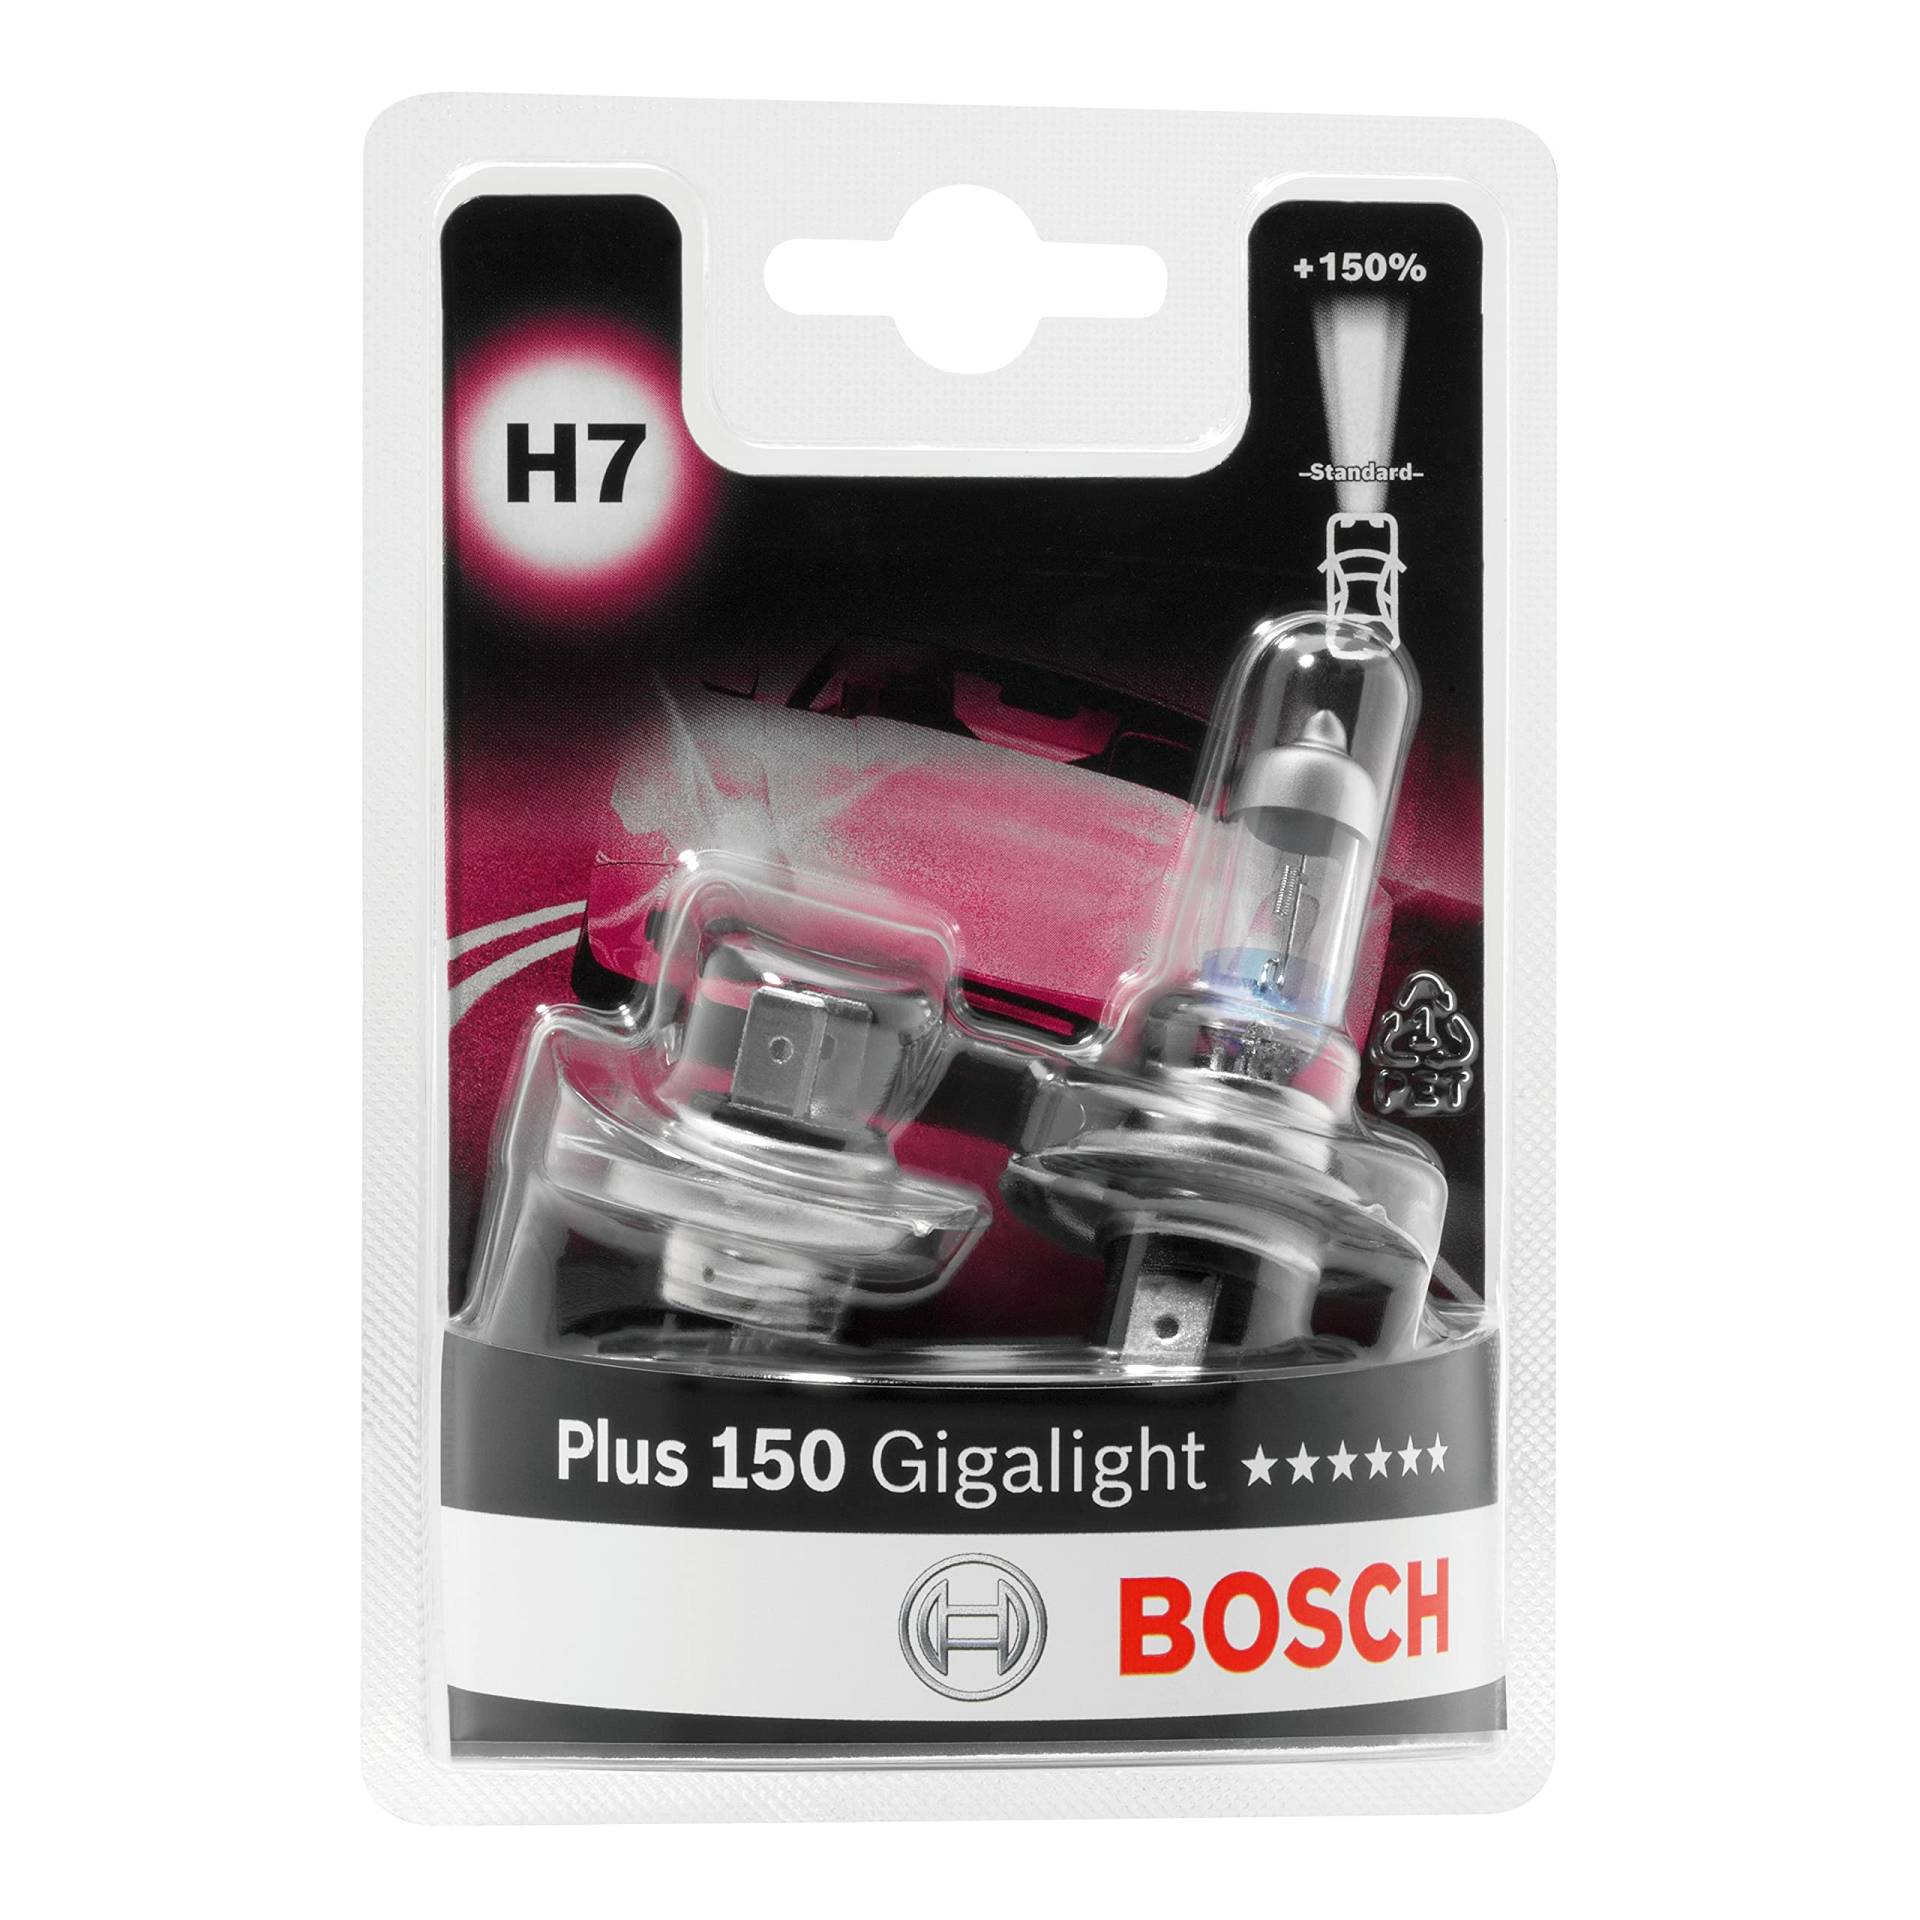 Bosch H7 Plus 150 Gigalight Lampen - 12 V 55 W PX26d - 2 Stücke von Bosch Automotive